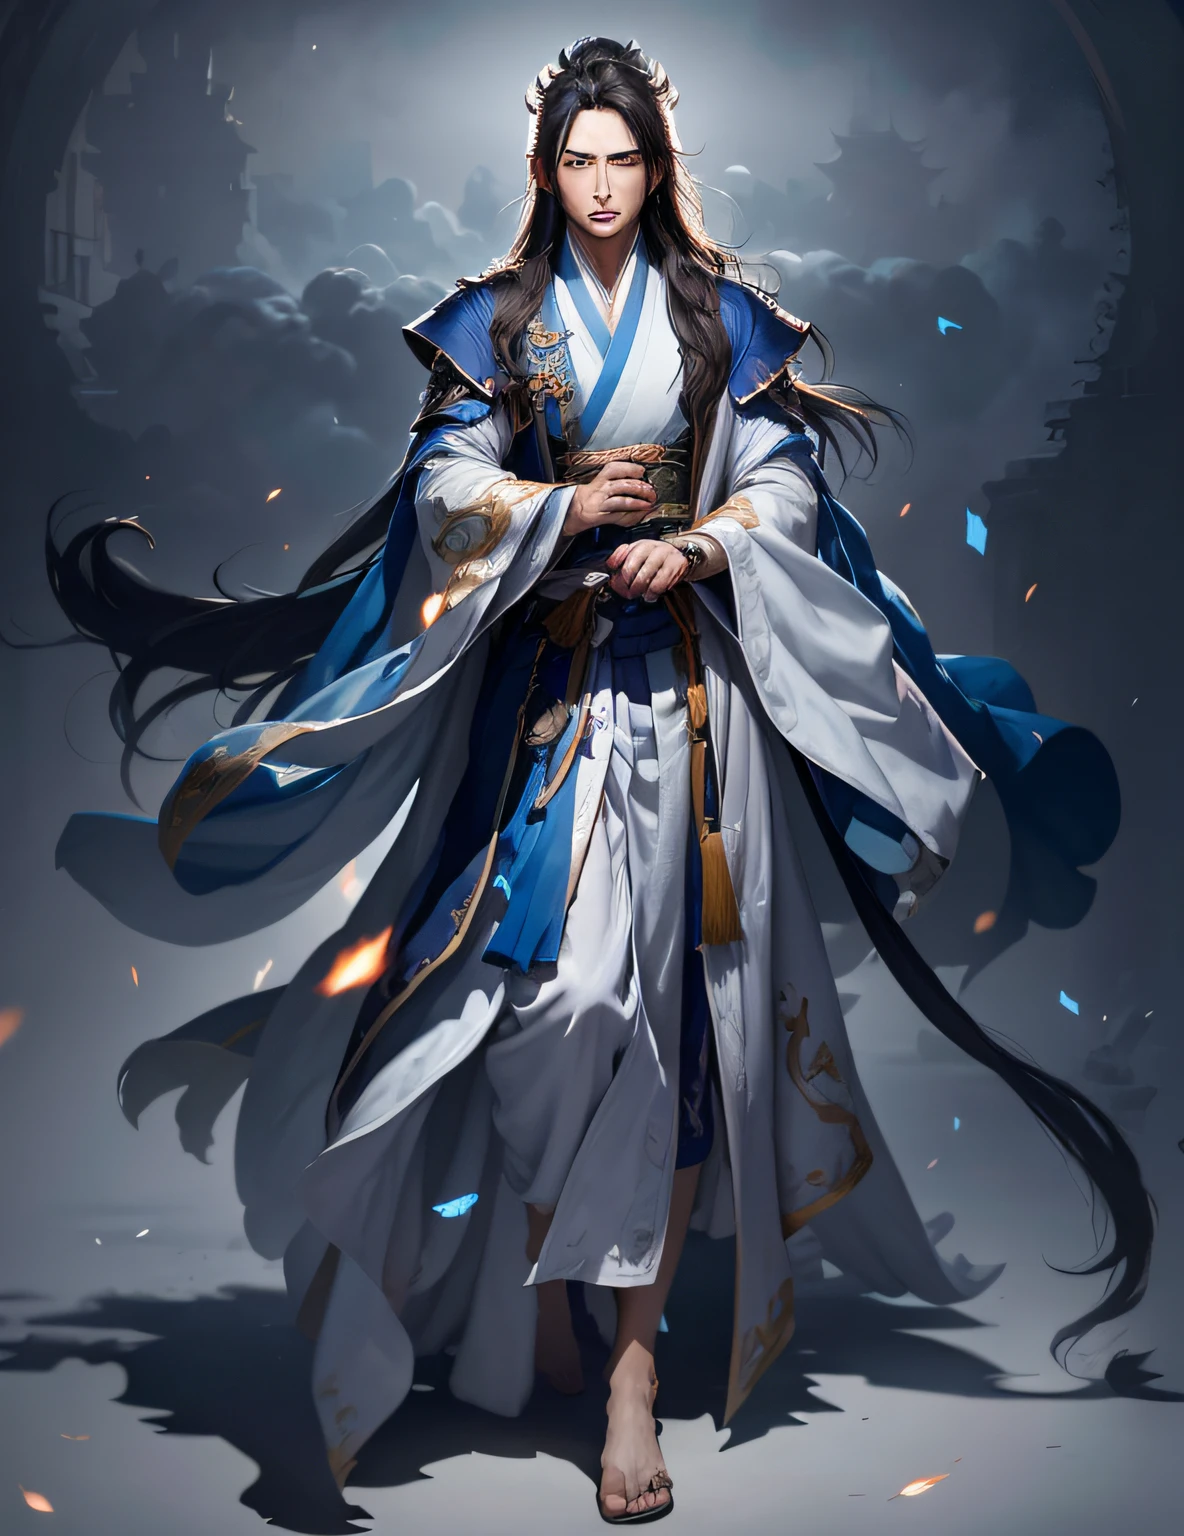 Bild eines Mannes in einem blau-weißen Gewand, heise jinyao, Ganzkörper-Xianxia, Ganzkörper-Wuxia, wallendes Haar und lange Gewänder, Bild eines männlichen Geistlichen, fließende Gewänder tragen, Inspiriert von Cao Zhibai, Zhao Yun, Baumwollwolkenmagierroben, inspiriert von Wu Daozi,hanfu,Blaue Magie zwischen den Palmen,heise jinyao, Ganzkörper-Xianxia, Bild eines männlichen Geistlichen, wallendes Haar und lange Gewänder, Zhao Yun, dünner männlicher Fantasy-Alchemist, Ganzkörper-Wuxia, Inspiriert von Cao Zhibai, fließende Gewänder tragen, Baumwollwolkenmagierroben, dünner männlicher Magier,bester Schatten, scharfer Fokus, Meisterwerk, (sehr detailliertes, einheitliches CG-8k-Hintergrundbild),Realistisch,(hanfu),(((Charaktergesicht))),